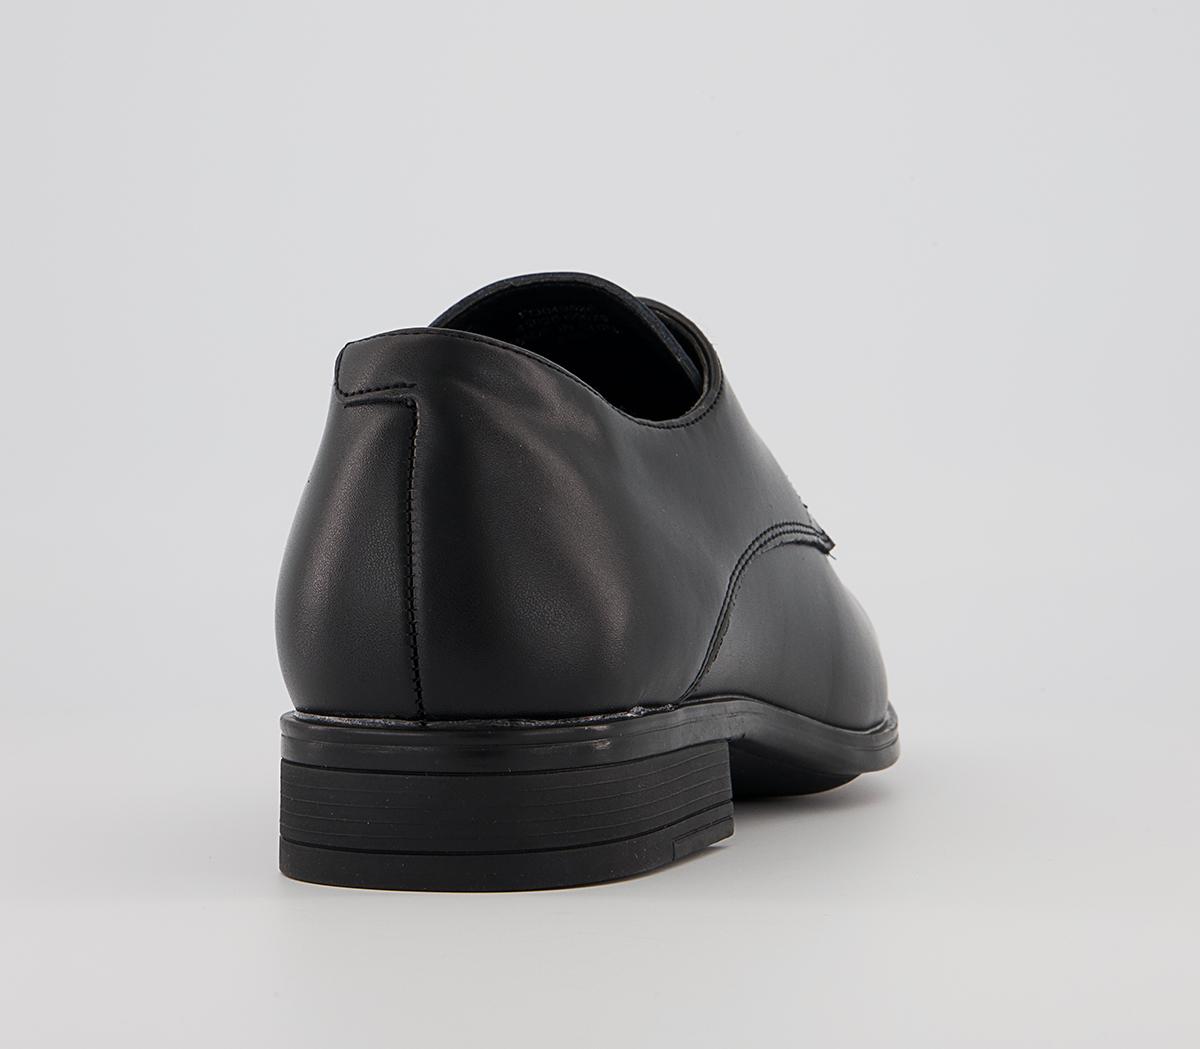 OFFICE Micro 2 Plain Derby Shoes Black Leather - Men’s Smart Shoes